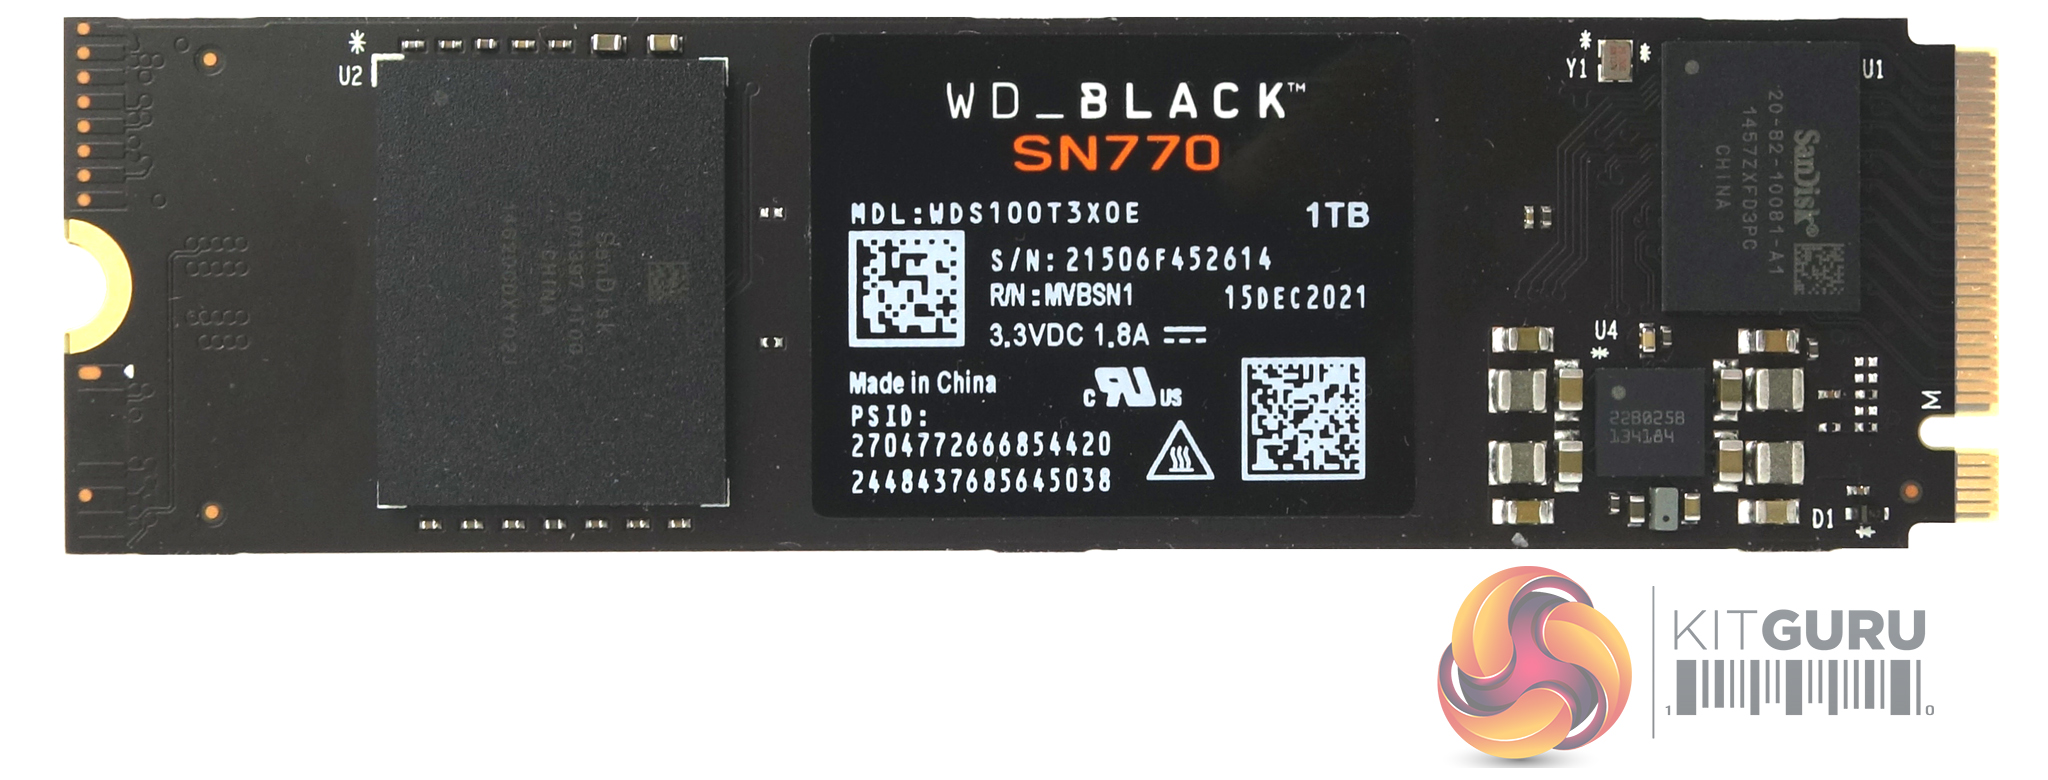 WD Black SN770 1TB SSD Review | KitGuru- Part 2